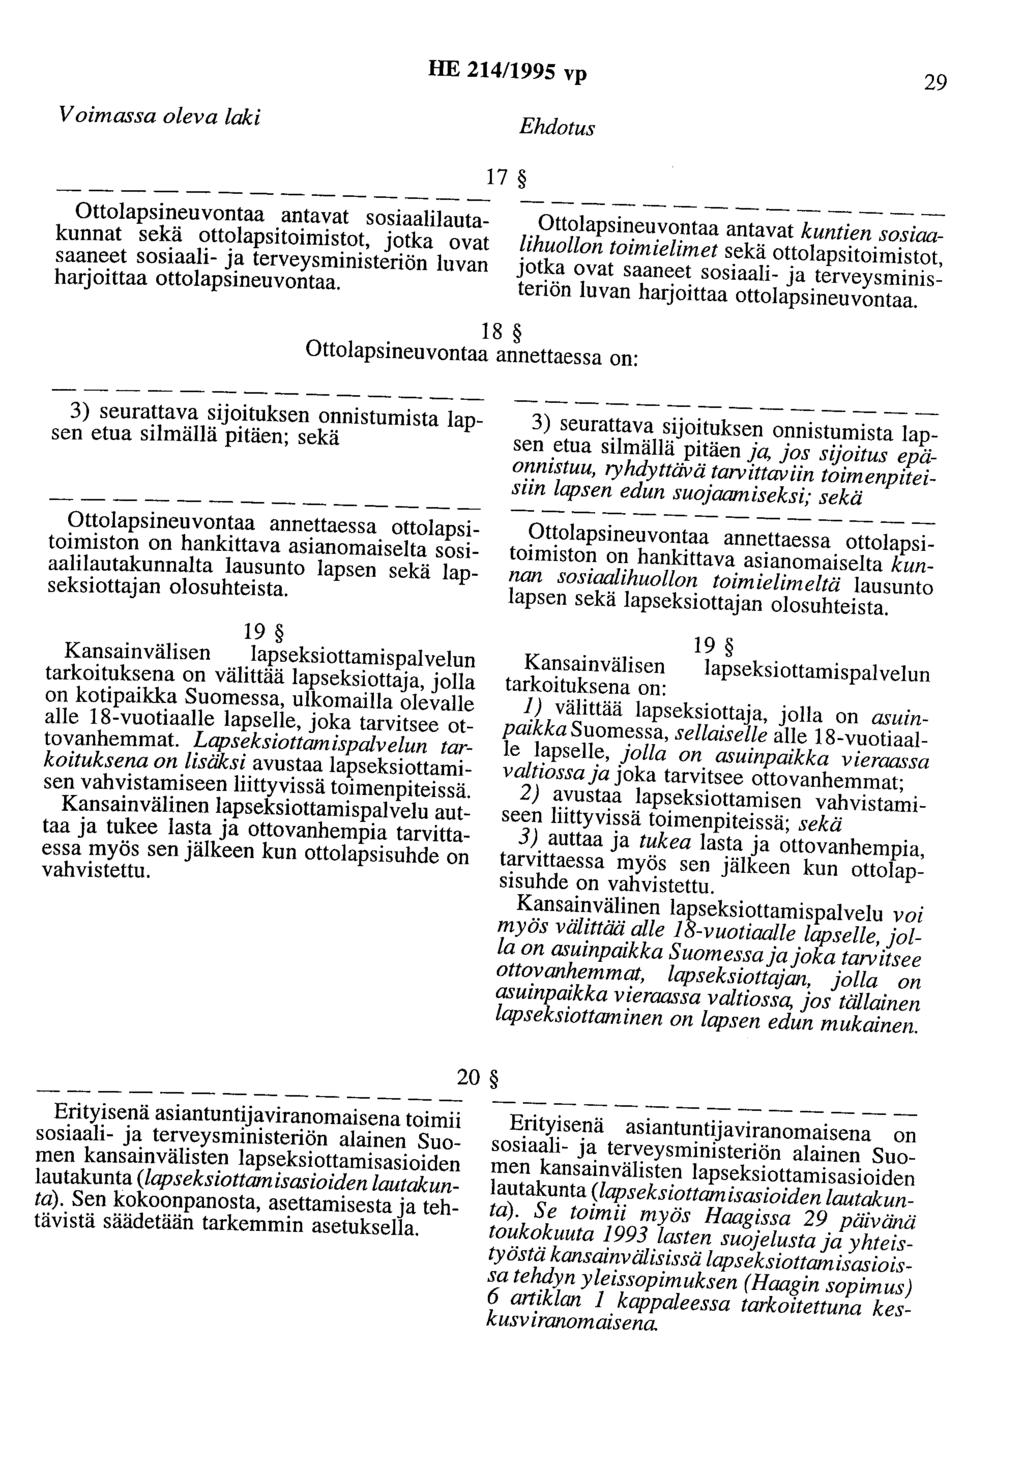 HE 214/1995 vp 29 Voimassa oleva laki Ehdotus 17 Ottolapsineuvontaa antavat sosiaalilautakunnat sekä ottolapsitoimistot, jotka ovat saaneet sosiaali- ja terveysministeriön luvan harjoittaa